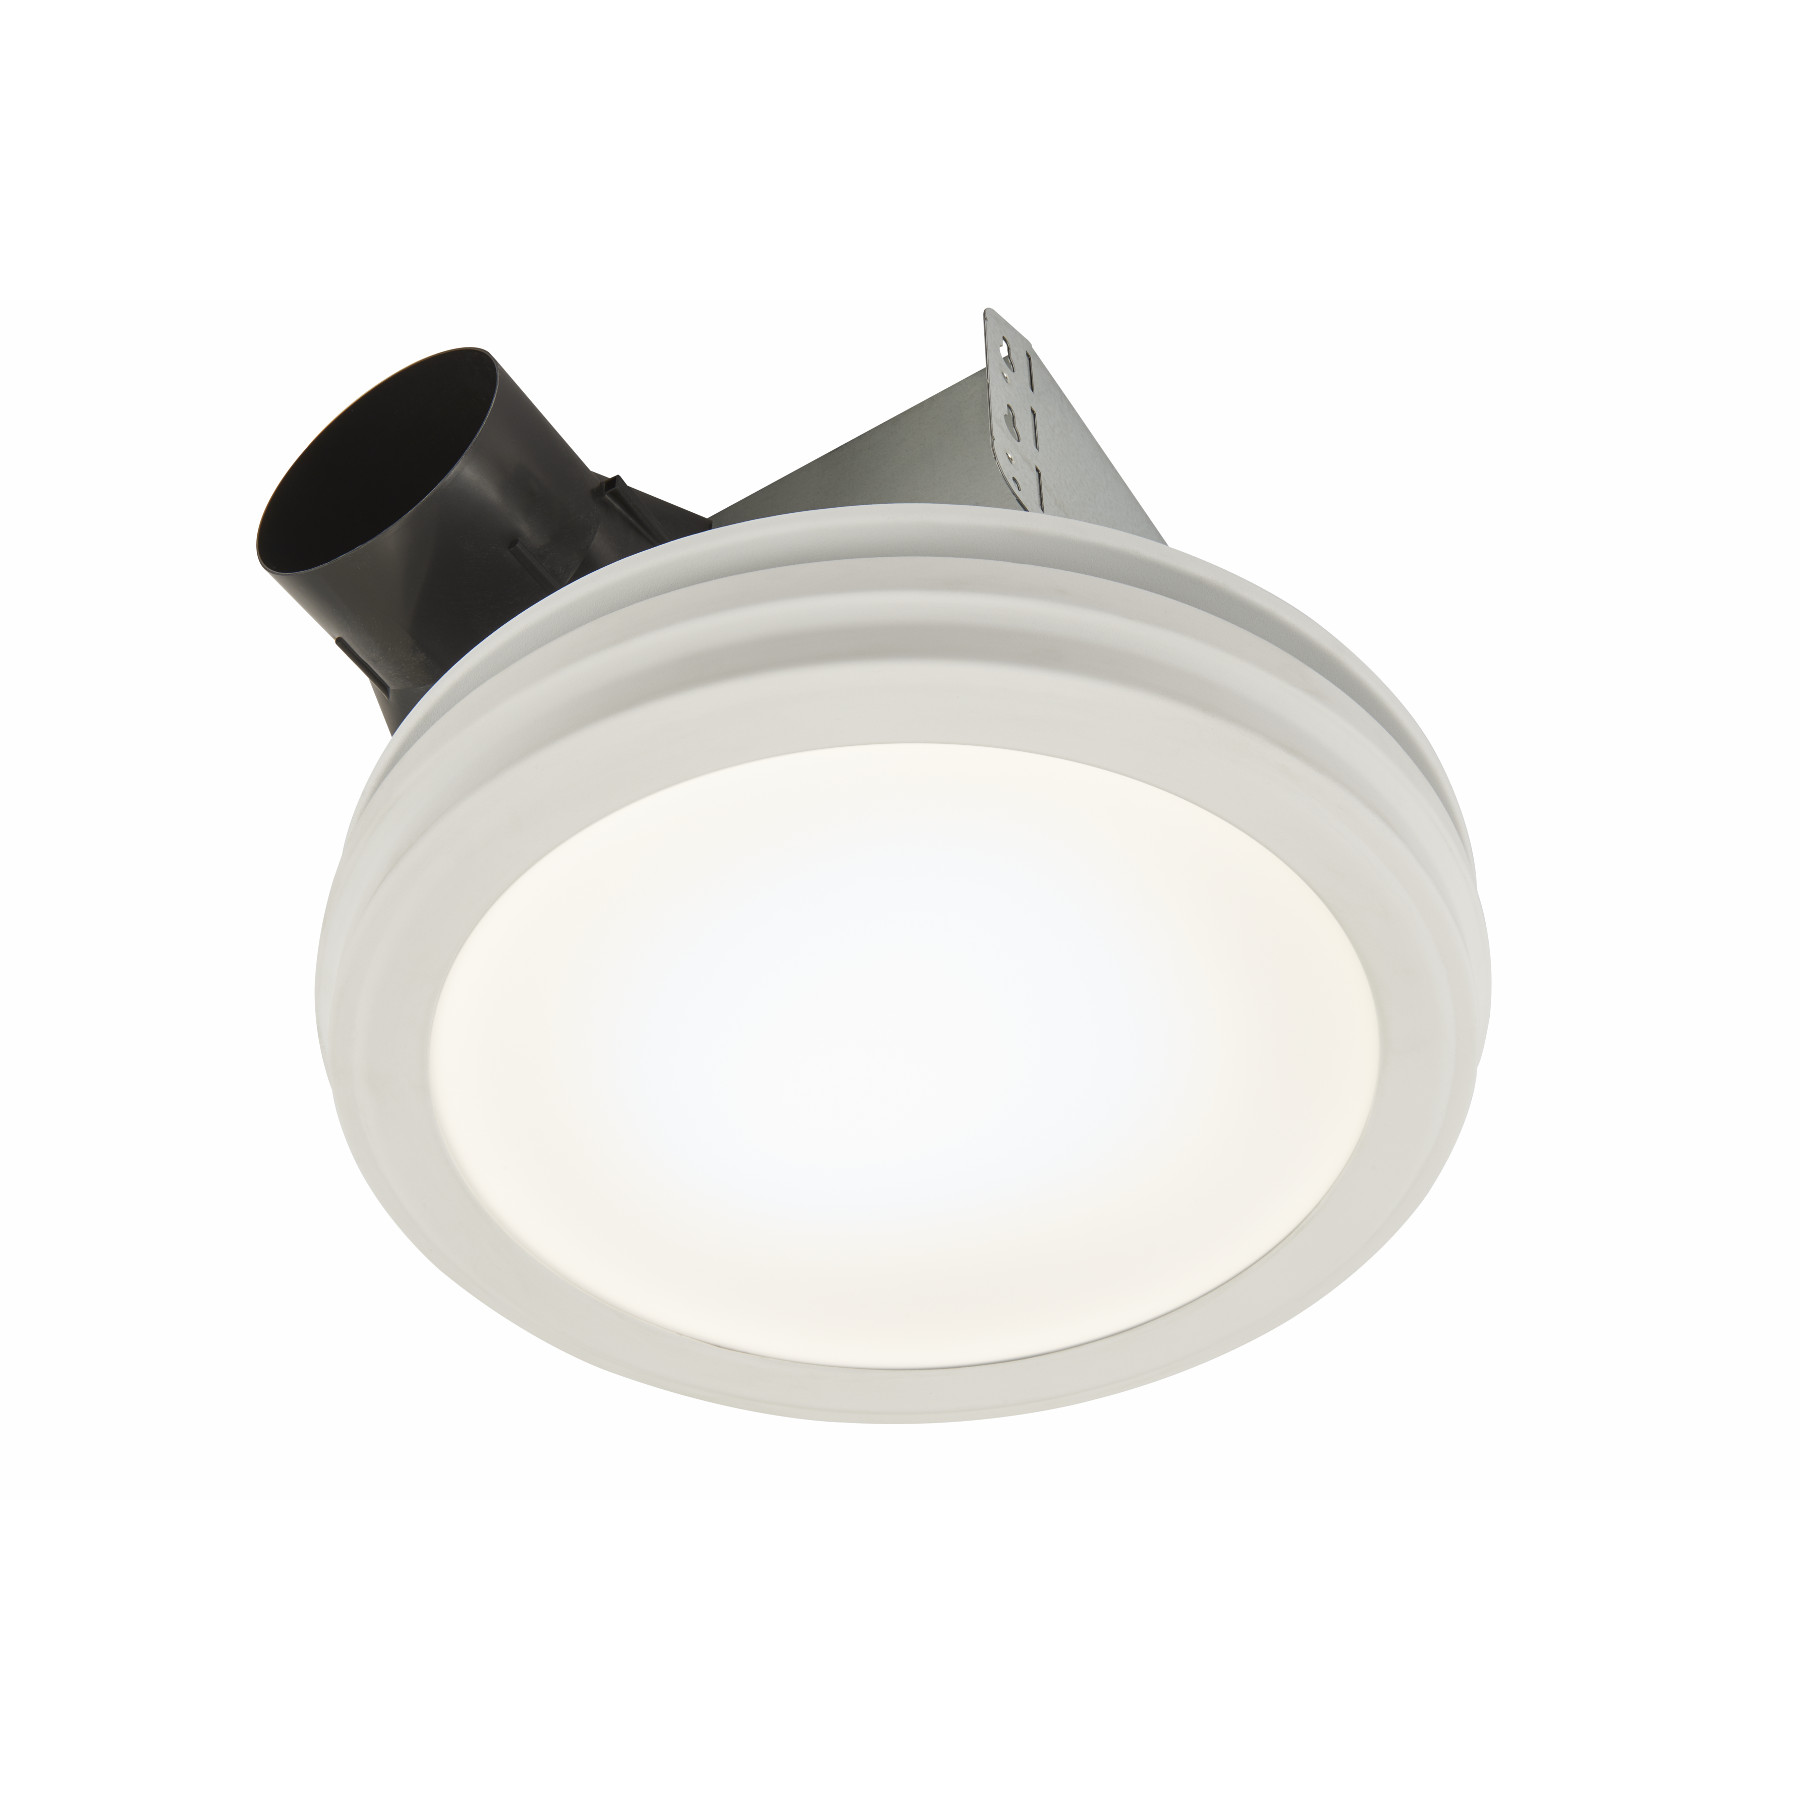 Broan® Round Flat Panel LED Light 80 CFM Ventilation Fan, 1.5 Sones